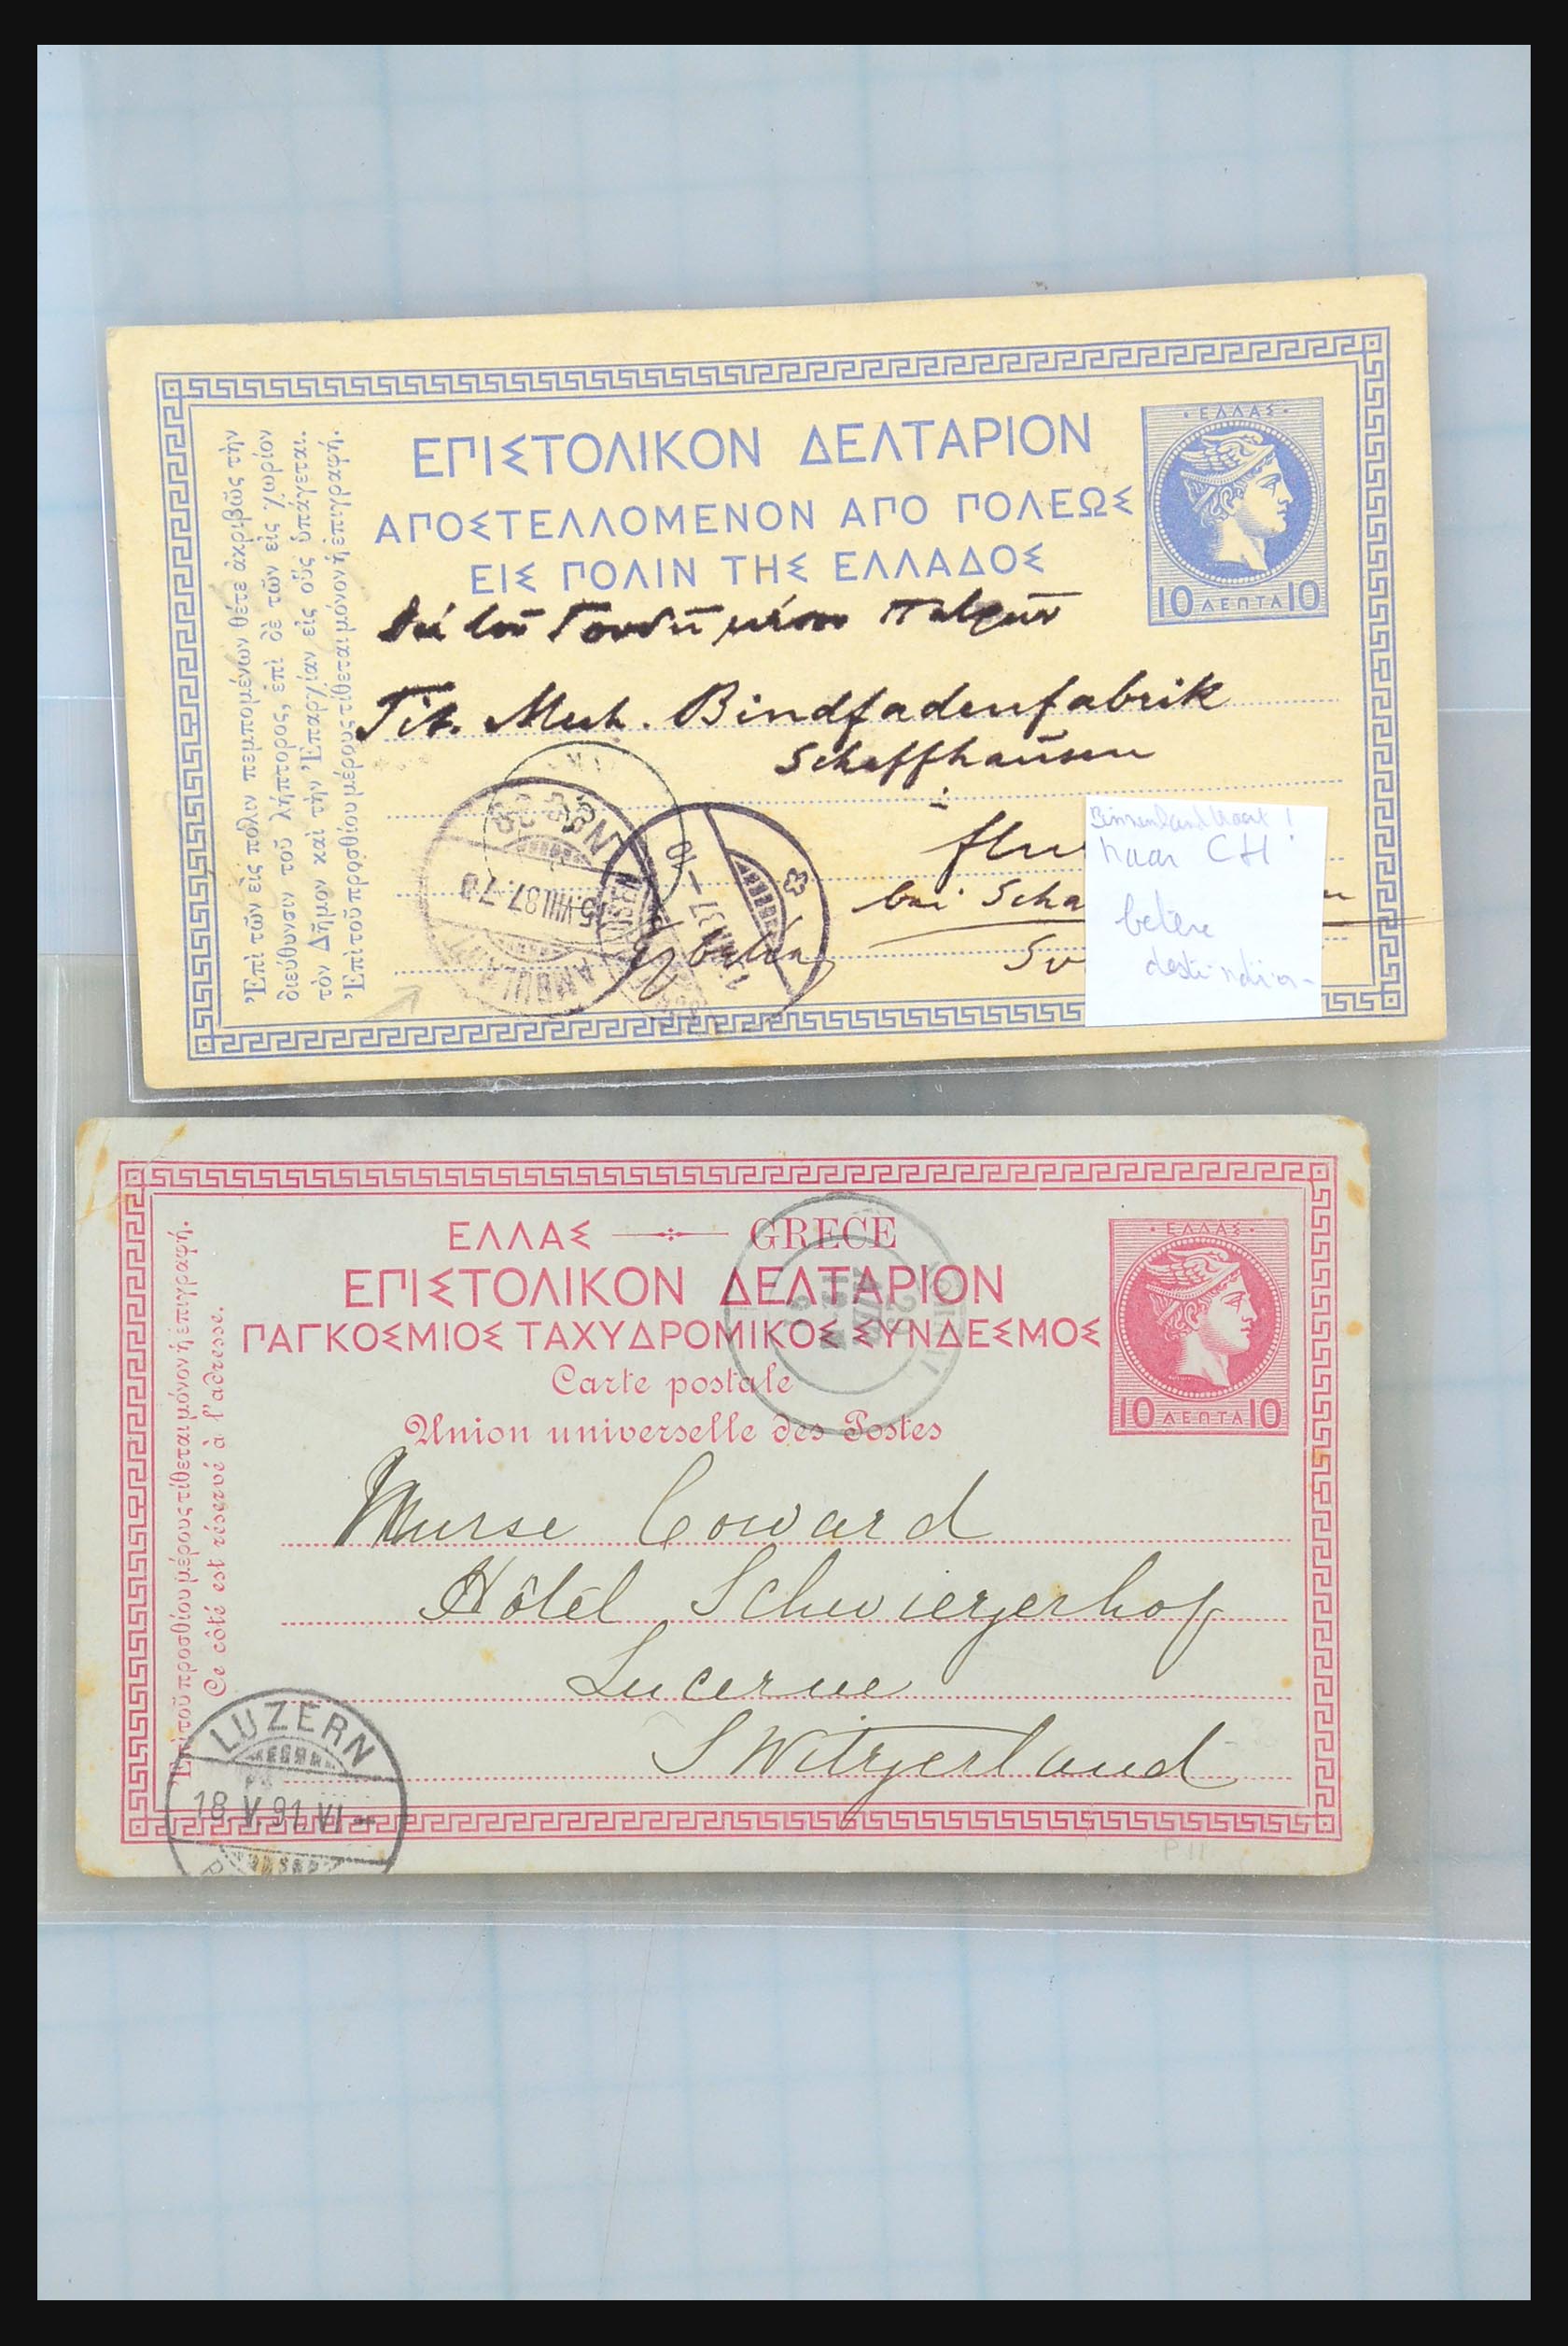 31358 108 - 31358 Portugal/Luxemburg/Griekenland brieven 1880-1960.